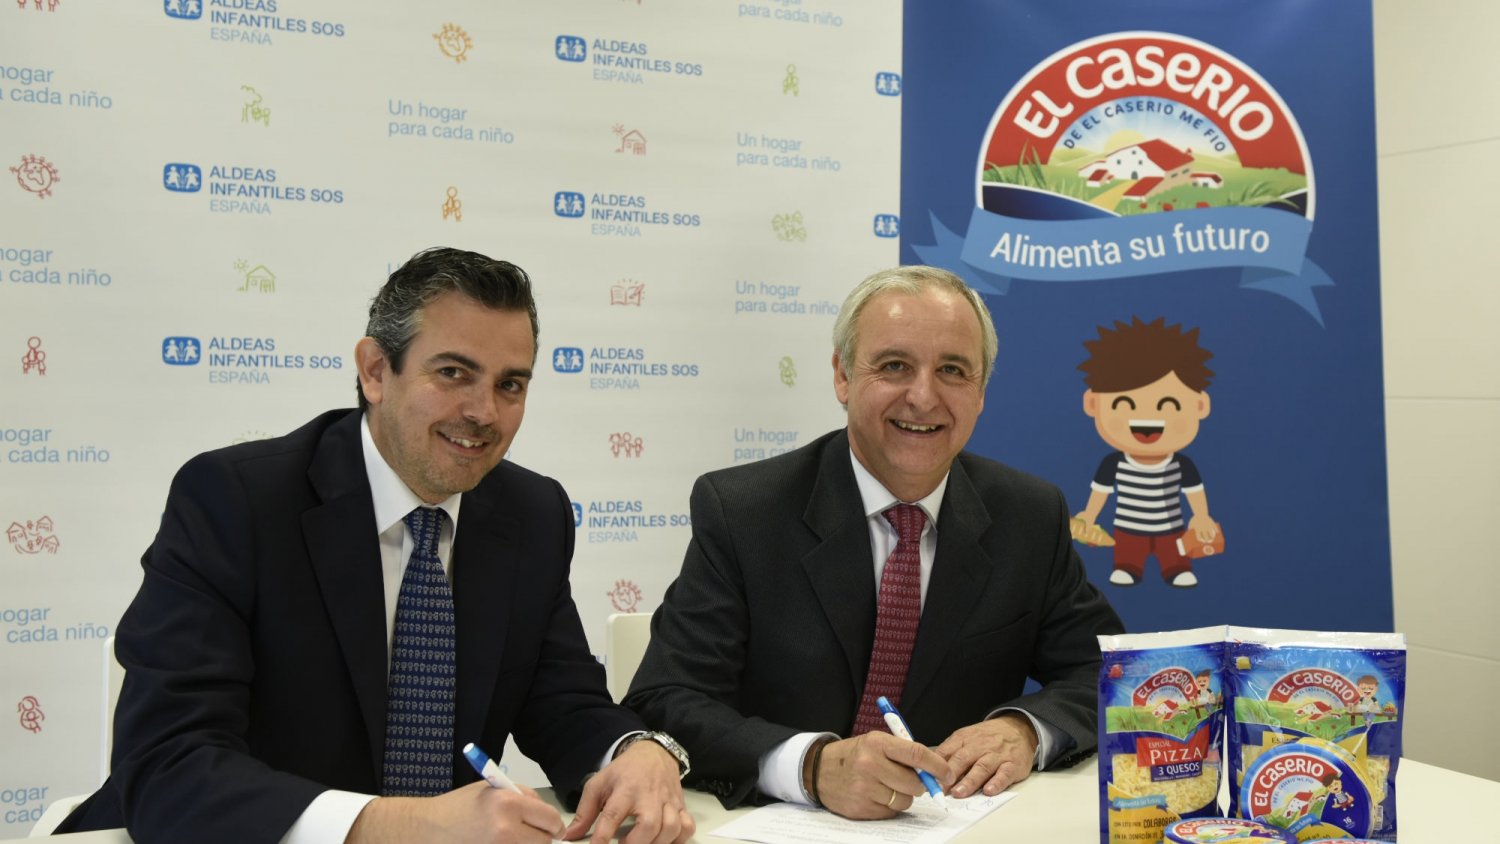 El Caserío contribuye en la donación de 1.500 meriendas para Aldeas Infantiles SOS en Málaga